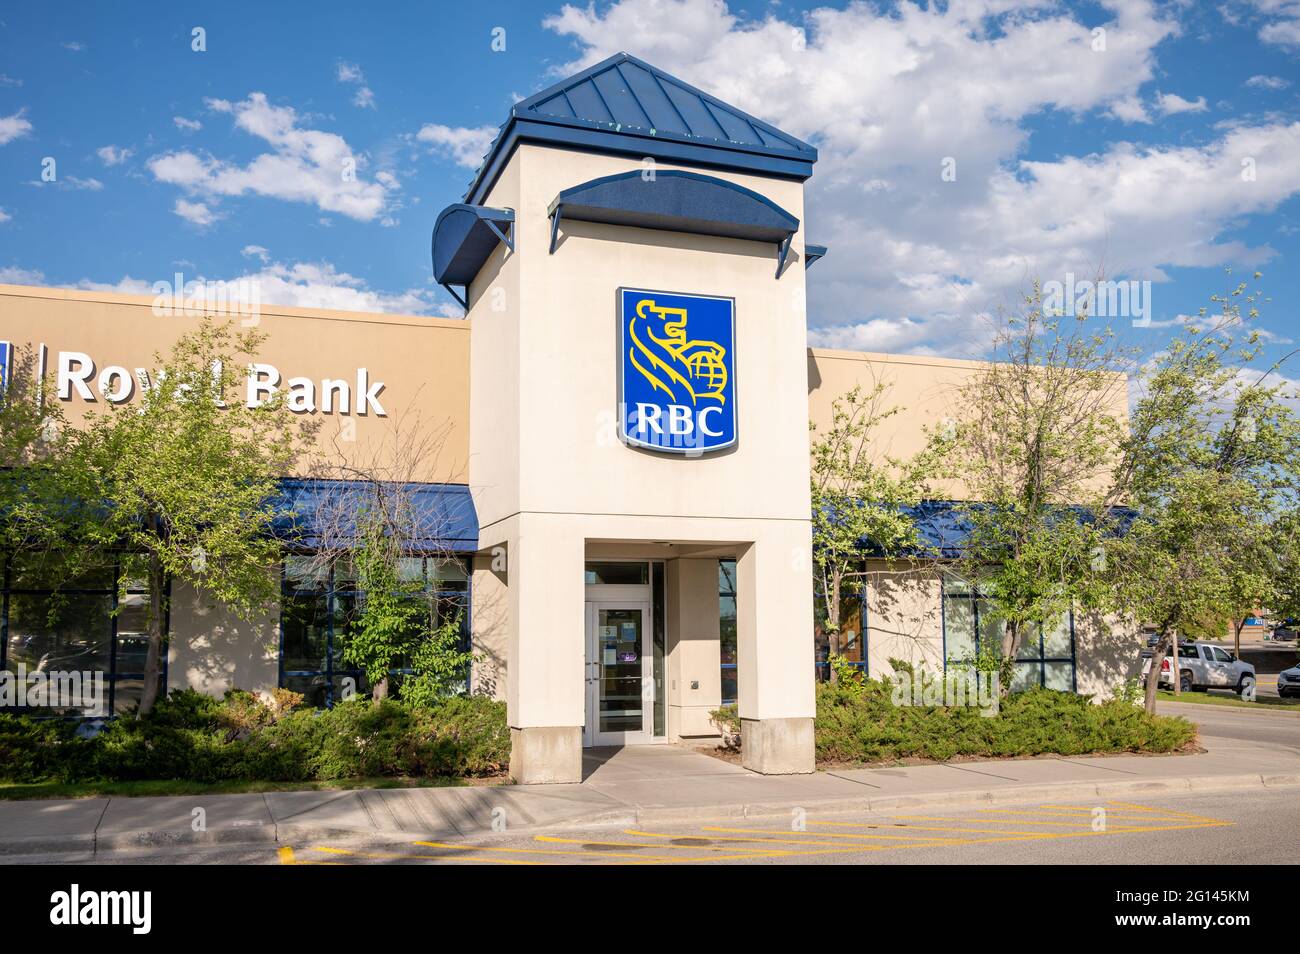 Calgary, Alberta - June 3, 2021: Exterior facade of a branch of the Royal Bank of Canada. Stock Photo